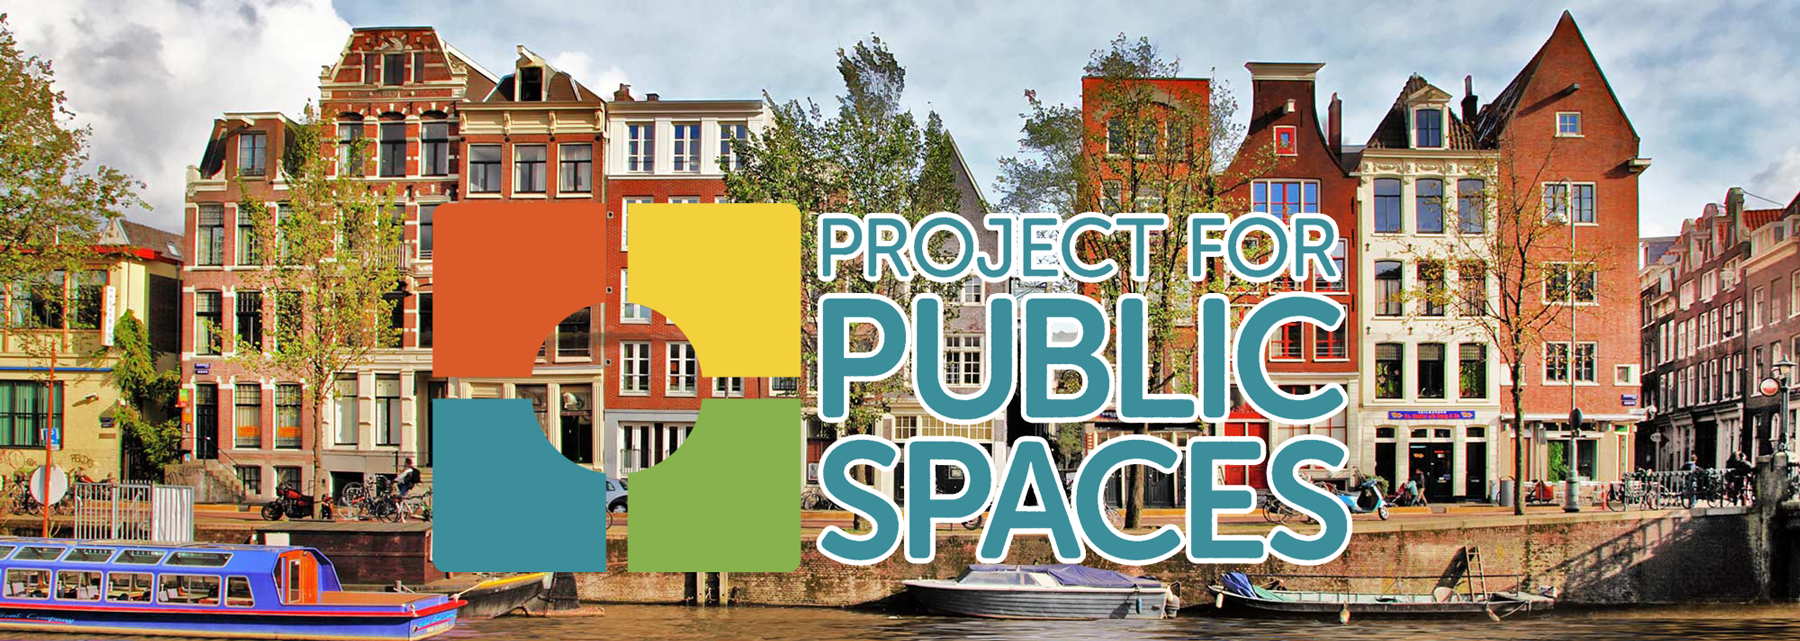 Project for Public Spaces prépare une assemblée à Amsterdam en Octobre © Project for Public Spaces